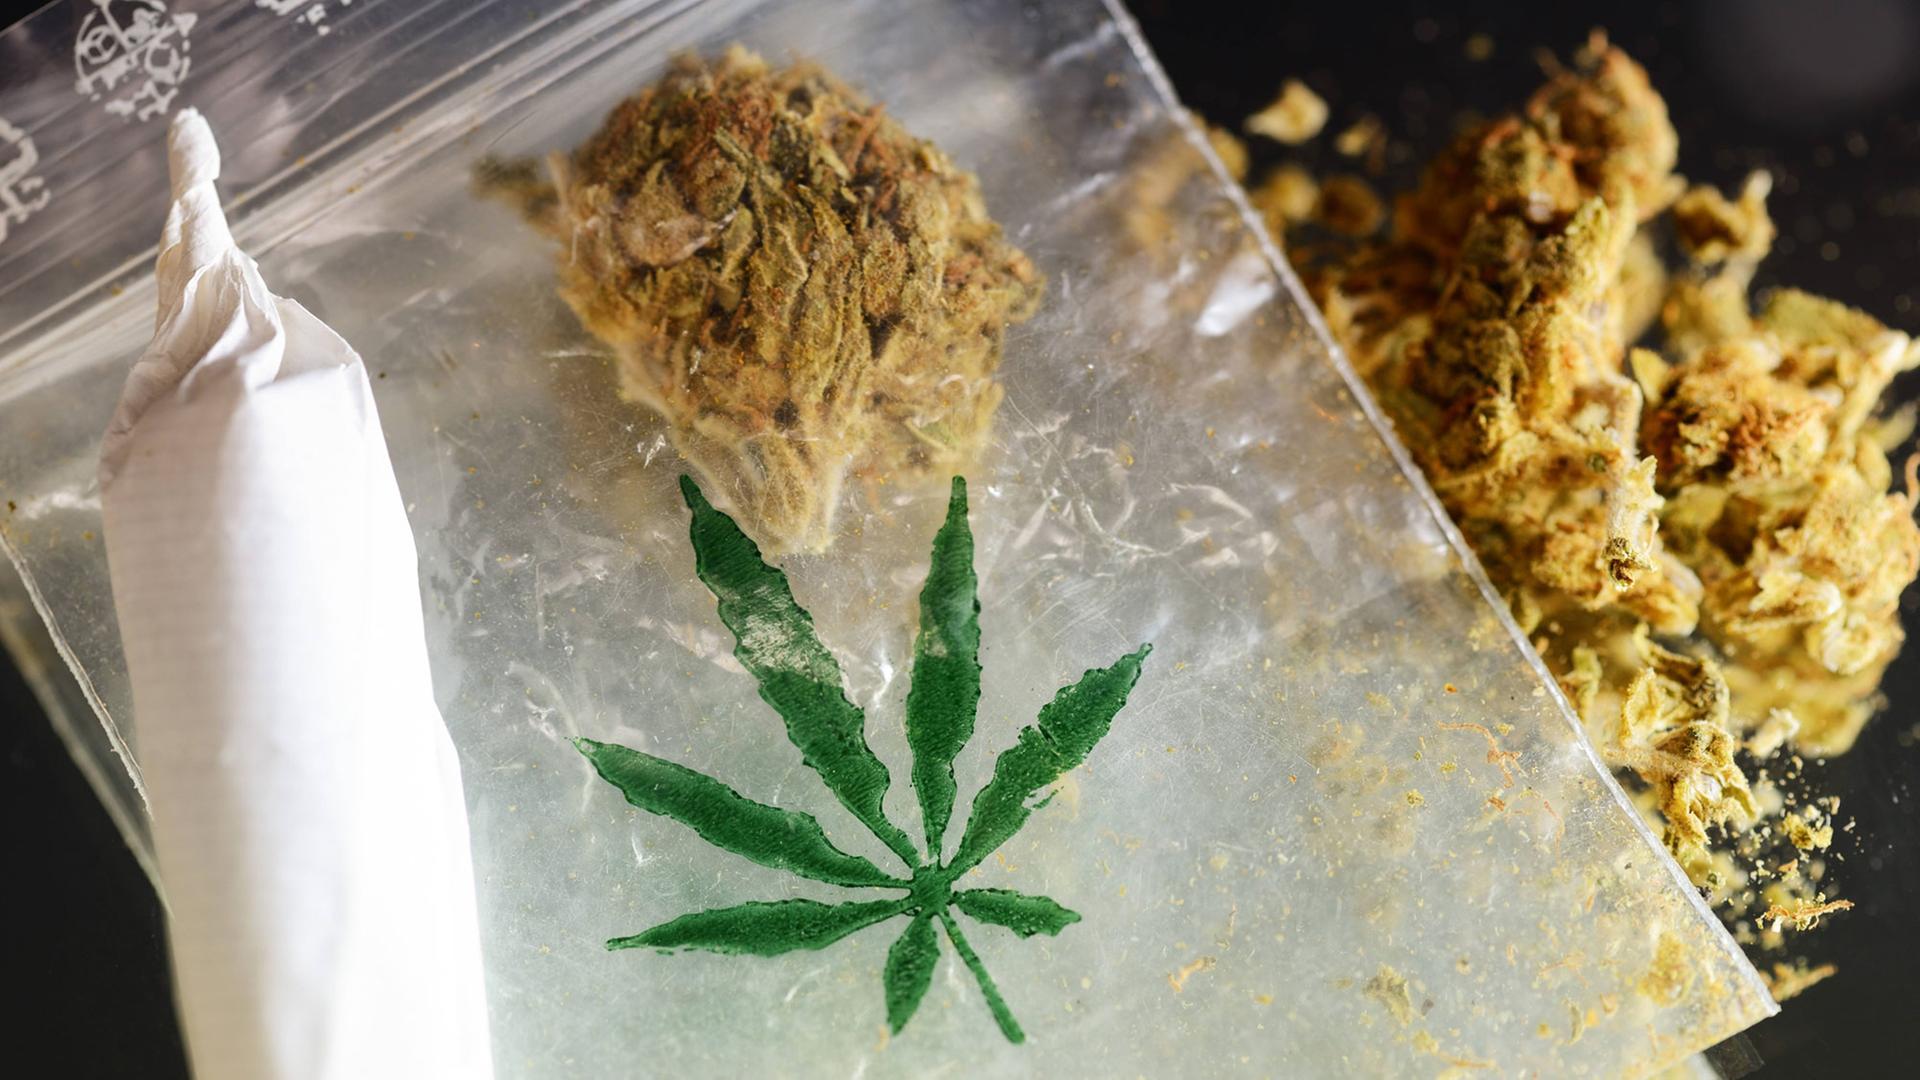 Kiffen auf Krankenschein - Wie viele Joints ergeben 62 Kilo Cannabis? |  deutschlandfunkkultur.de